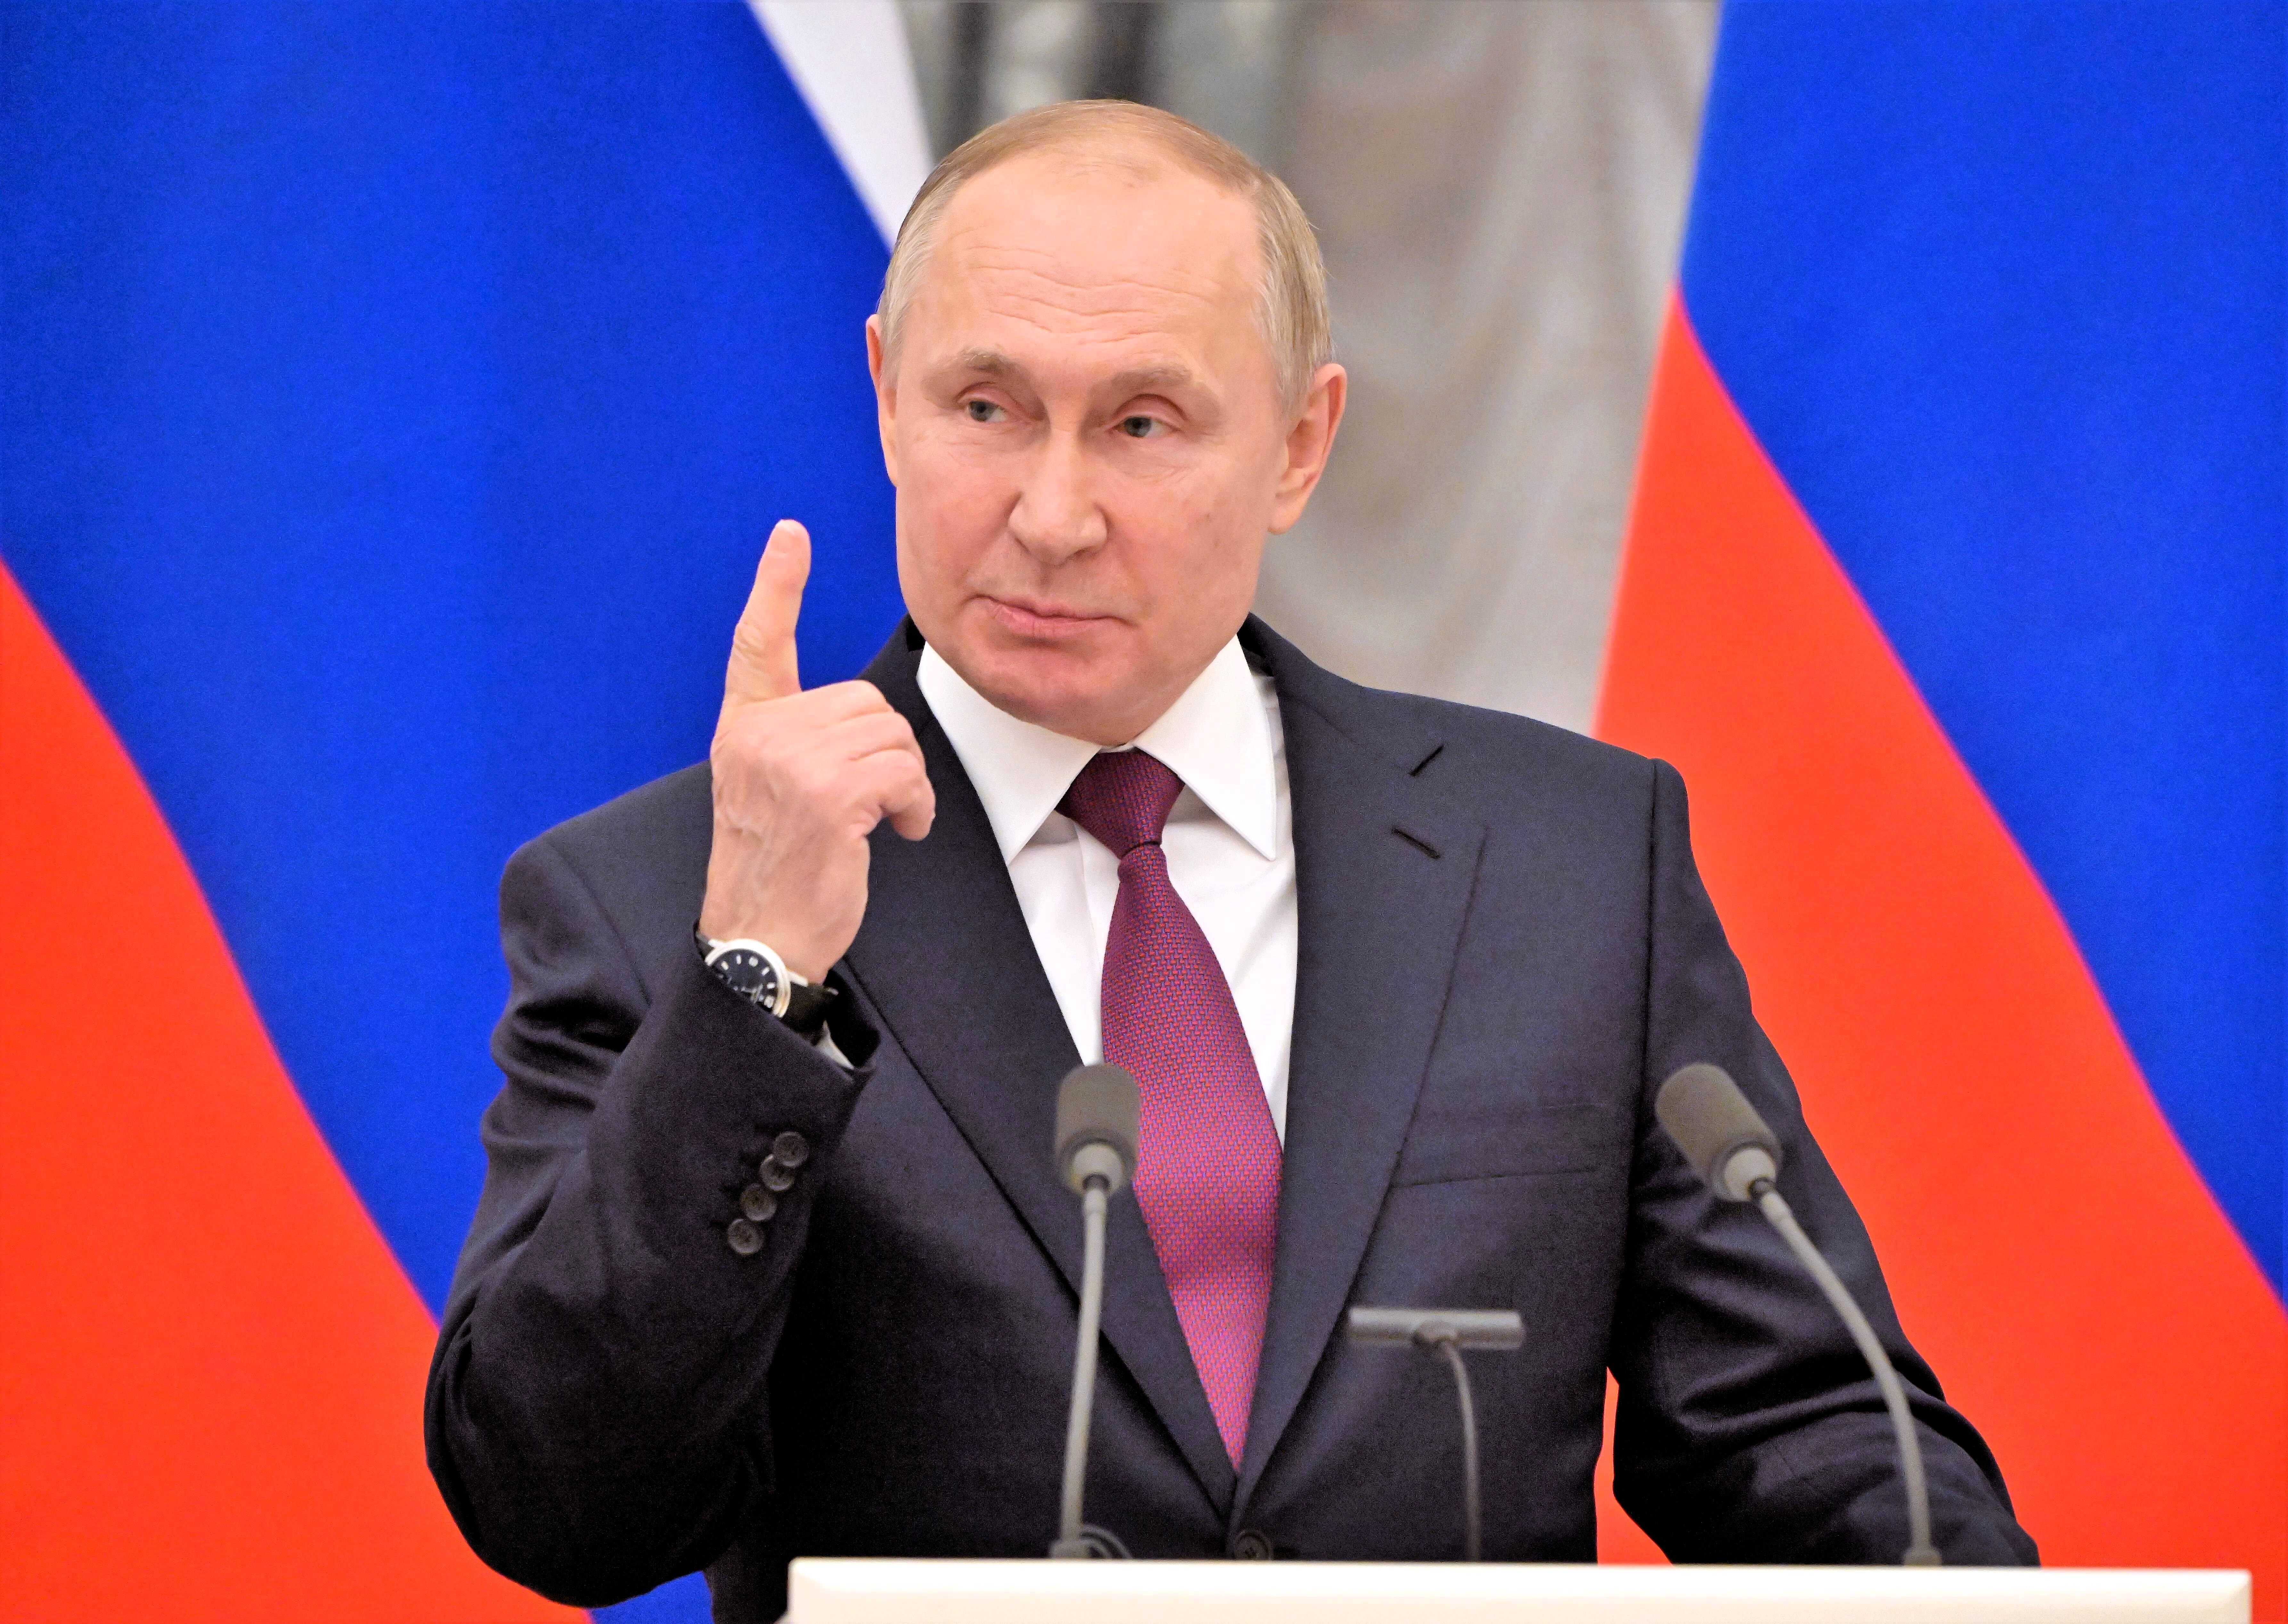 Endlich Frieden! Putin Botschafter nennt Datum für Kriegsende - aber ist das realistisch?